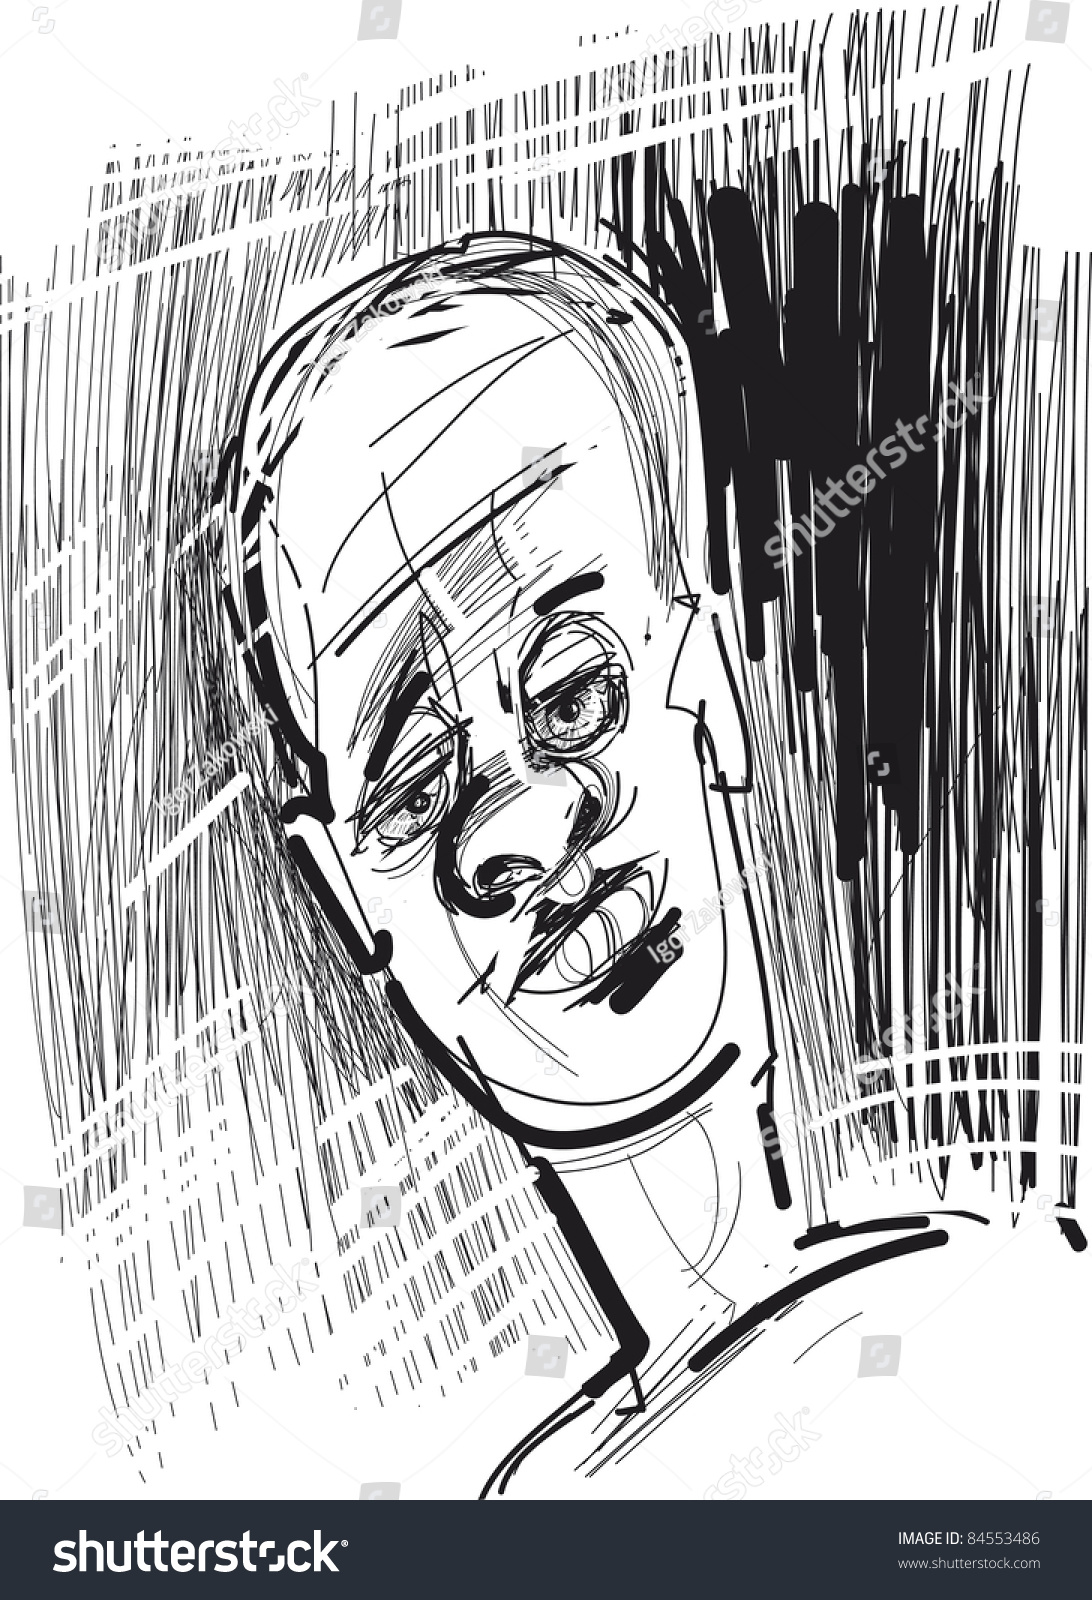 Illustration Sketch Of Man Face - 84553486 : Shutterstock